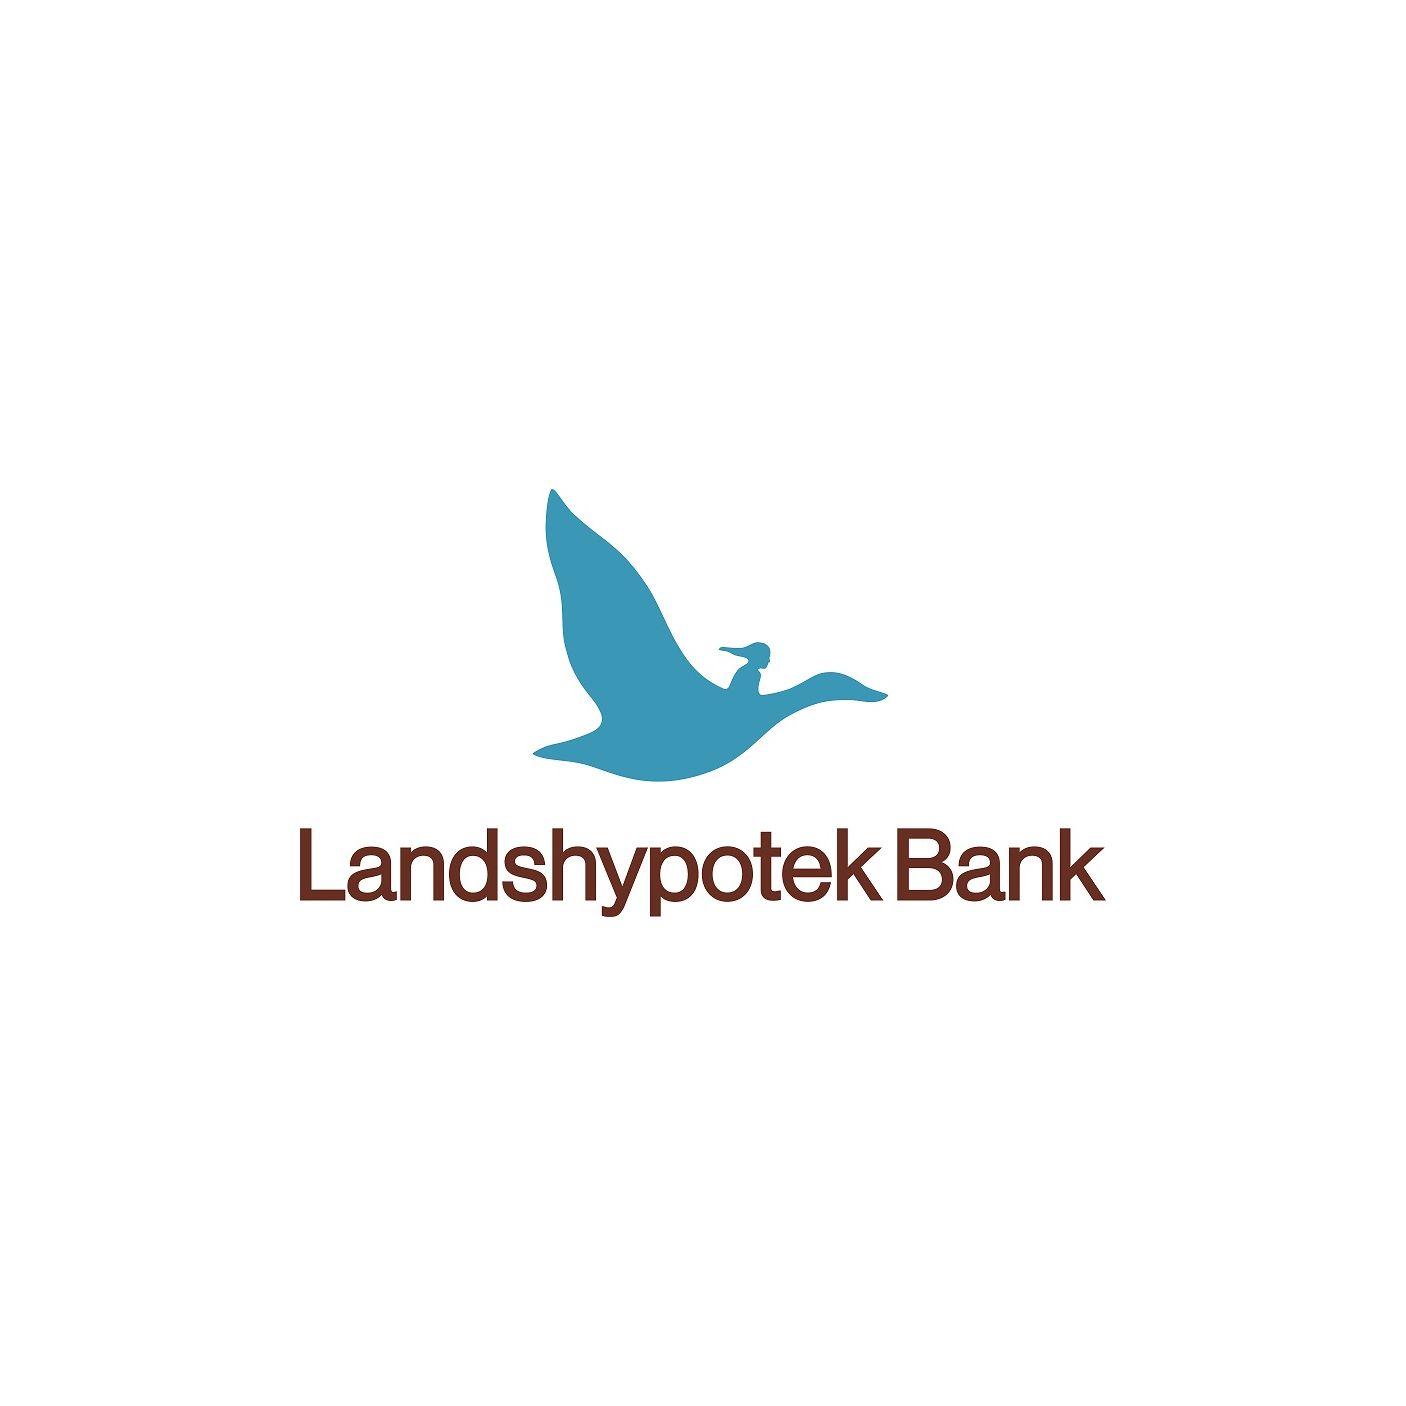 White Landshypoteketbank